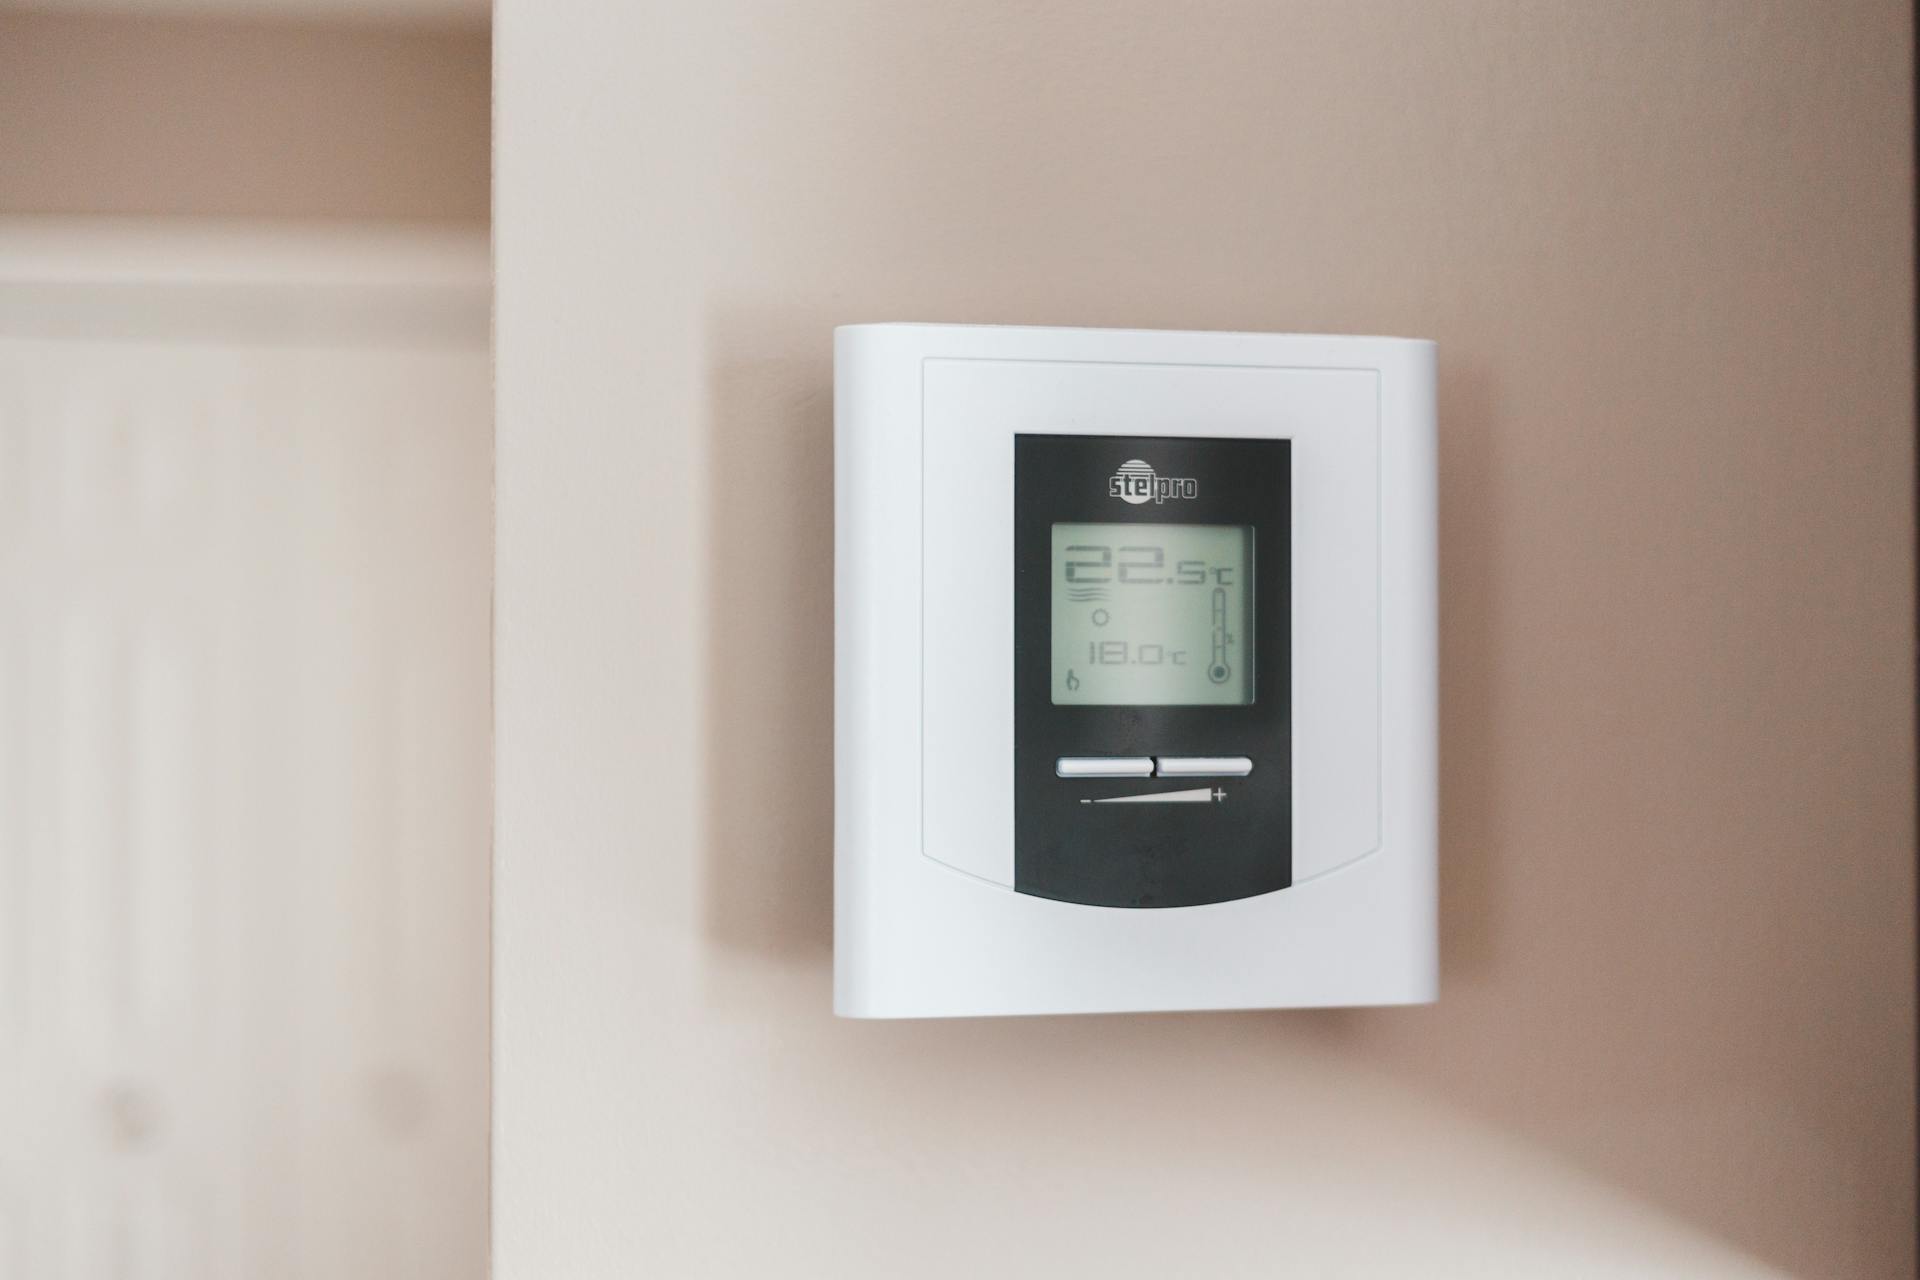 Ein Thermostat an der Wand | Quelle: Pexels